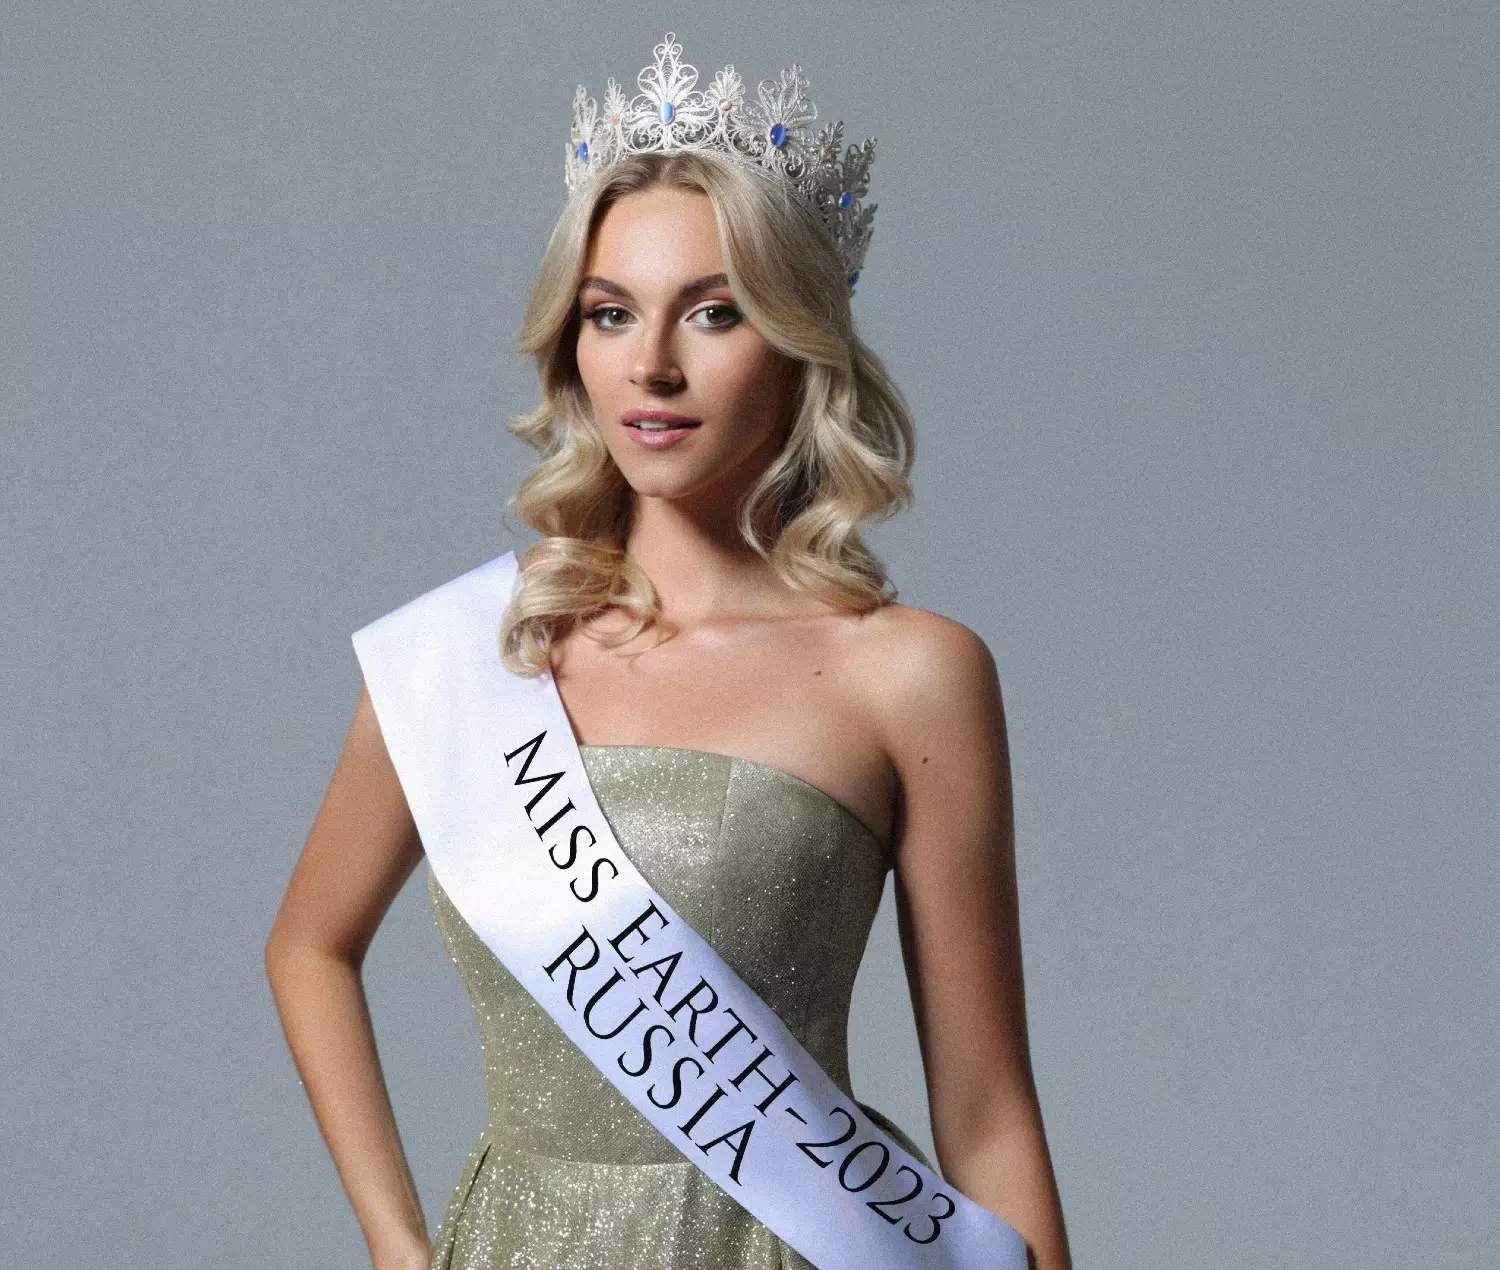 Дарья Луконькина участвует в конкурсе "Мисс Земля"